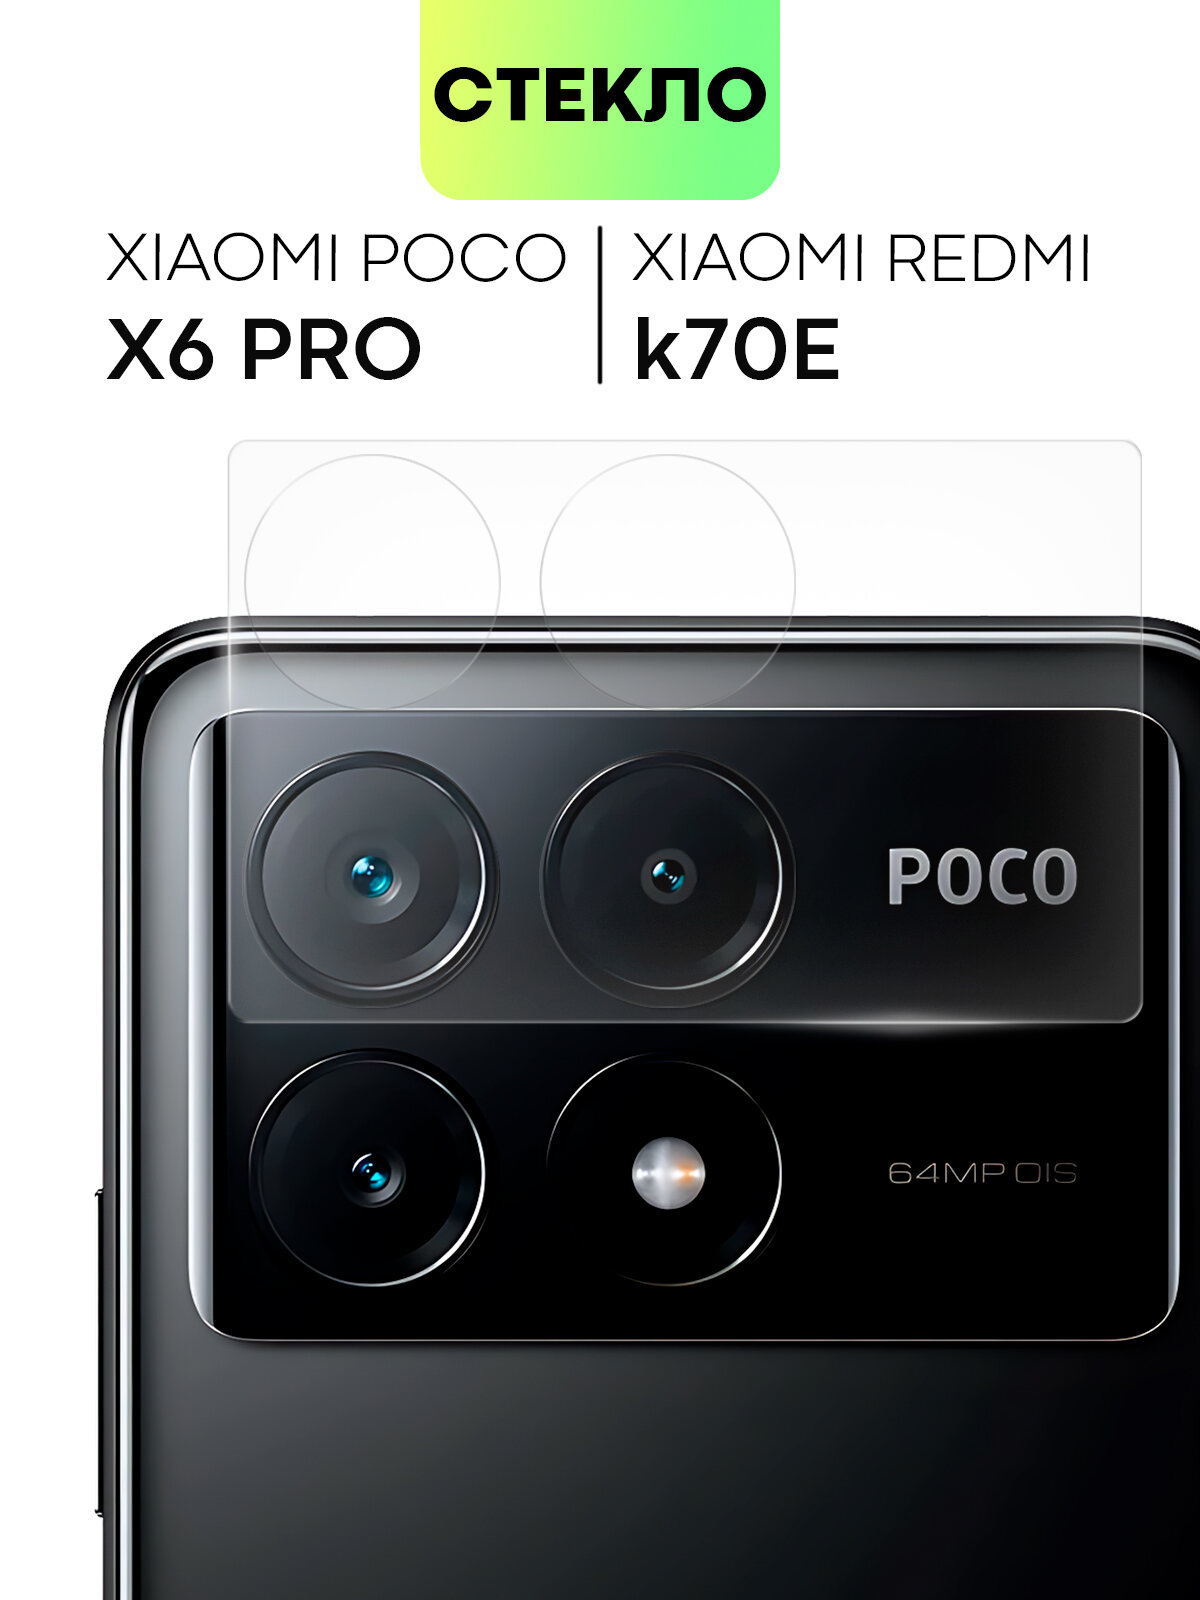 Стекло на камеру телефона Xiaomi Poco X6 Pro и Redmi K70E (Поко Икс 6 Про, Редми К70Е), защитное стекло для защиты модуля камер, прозрачное, BROSCORP